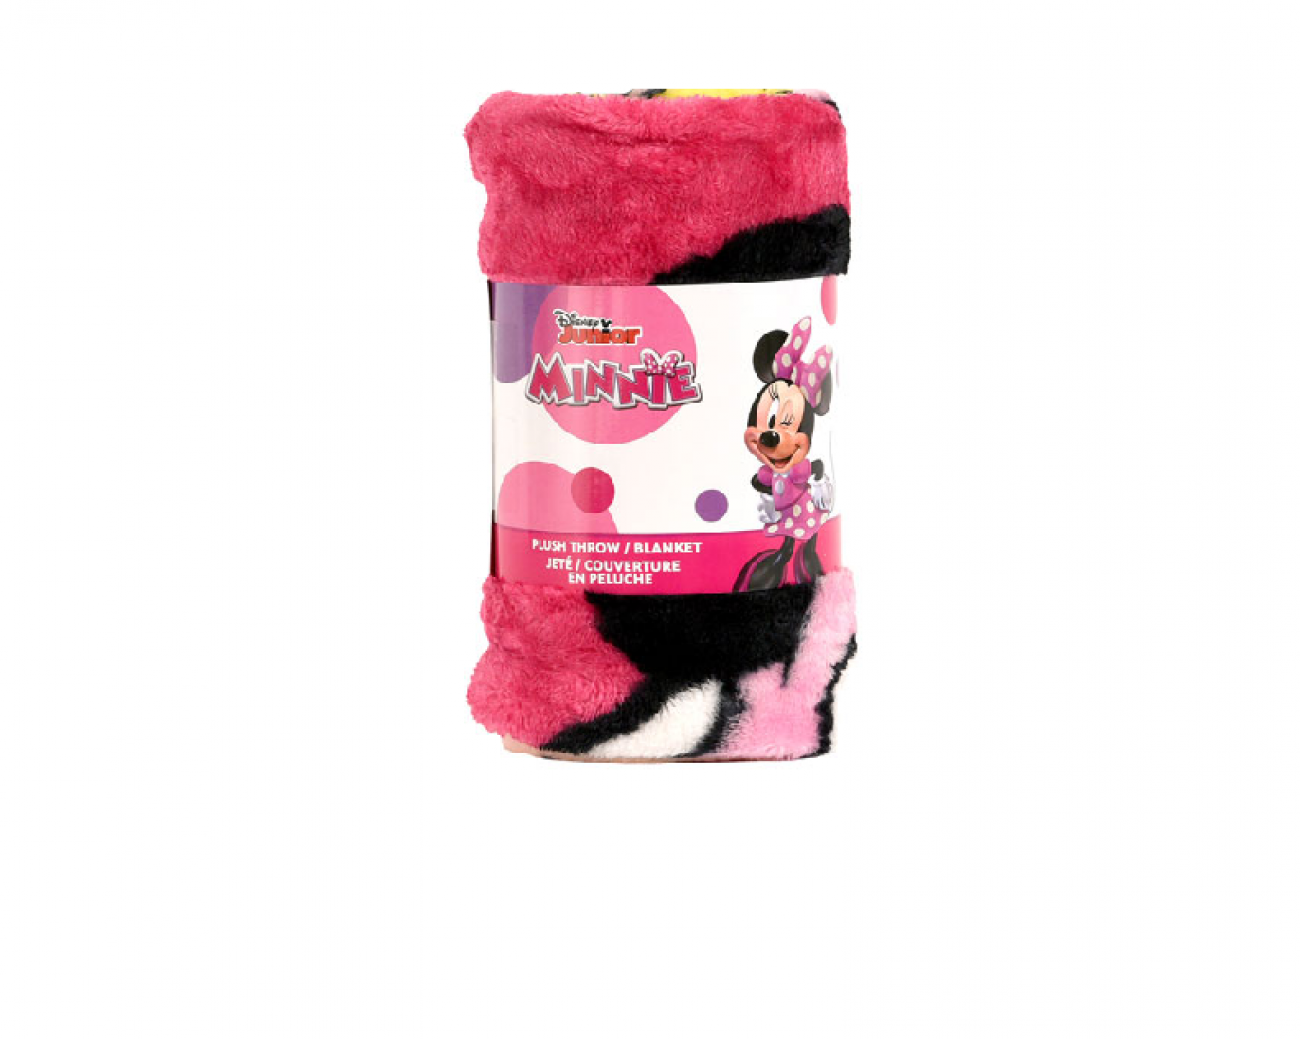 Disney Minnie Mouse Plush Throw Blanket